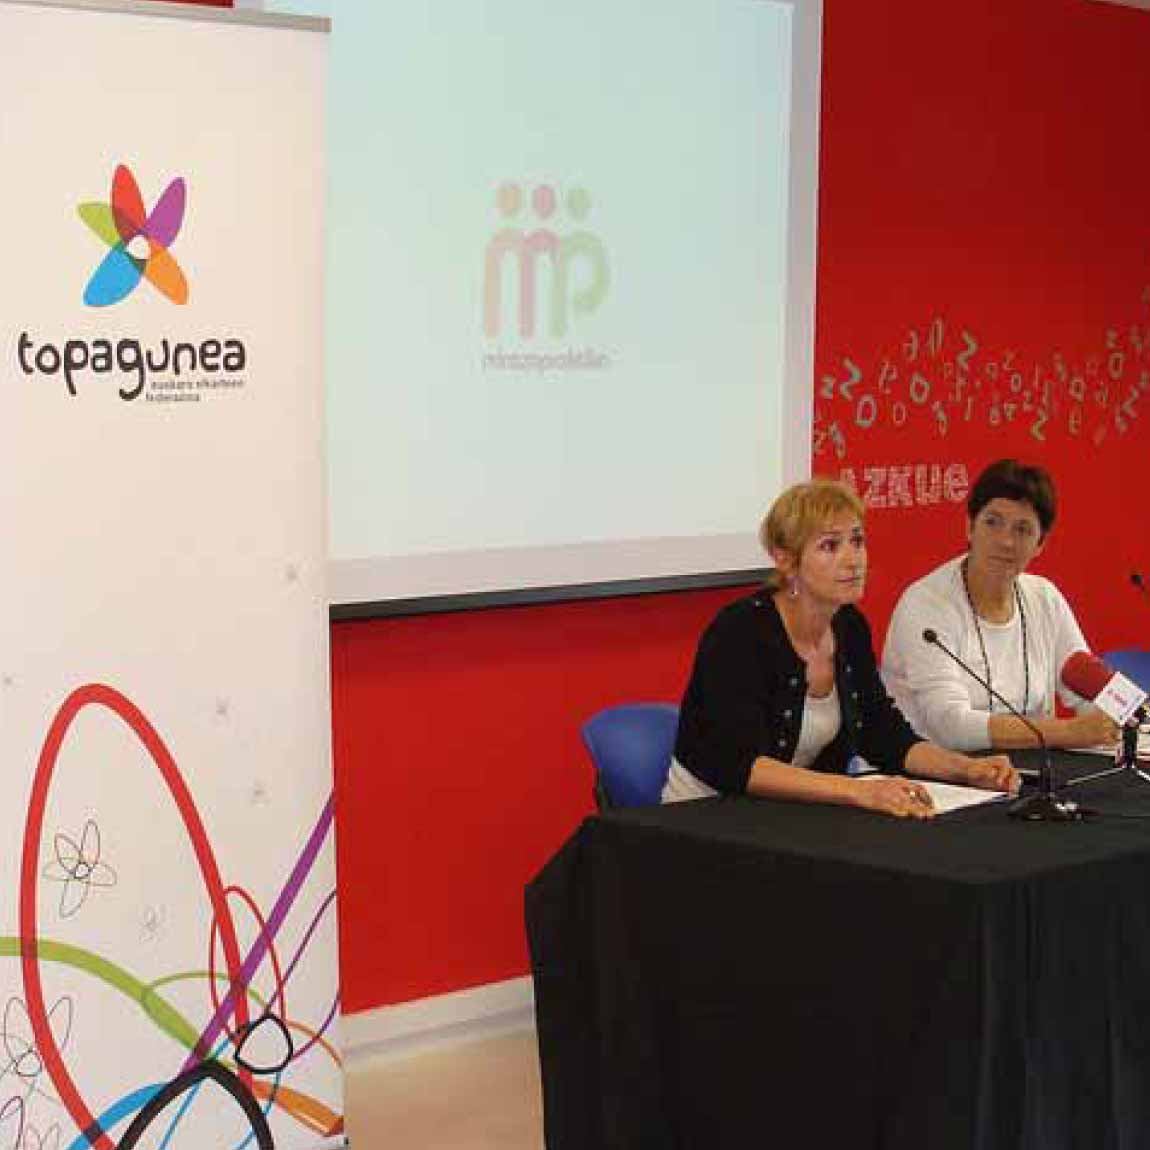 Rebranding Topagunea papelería